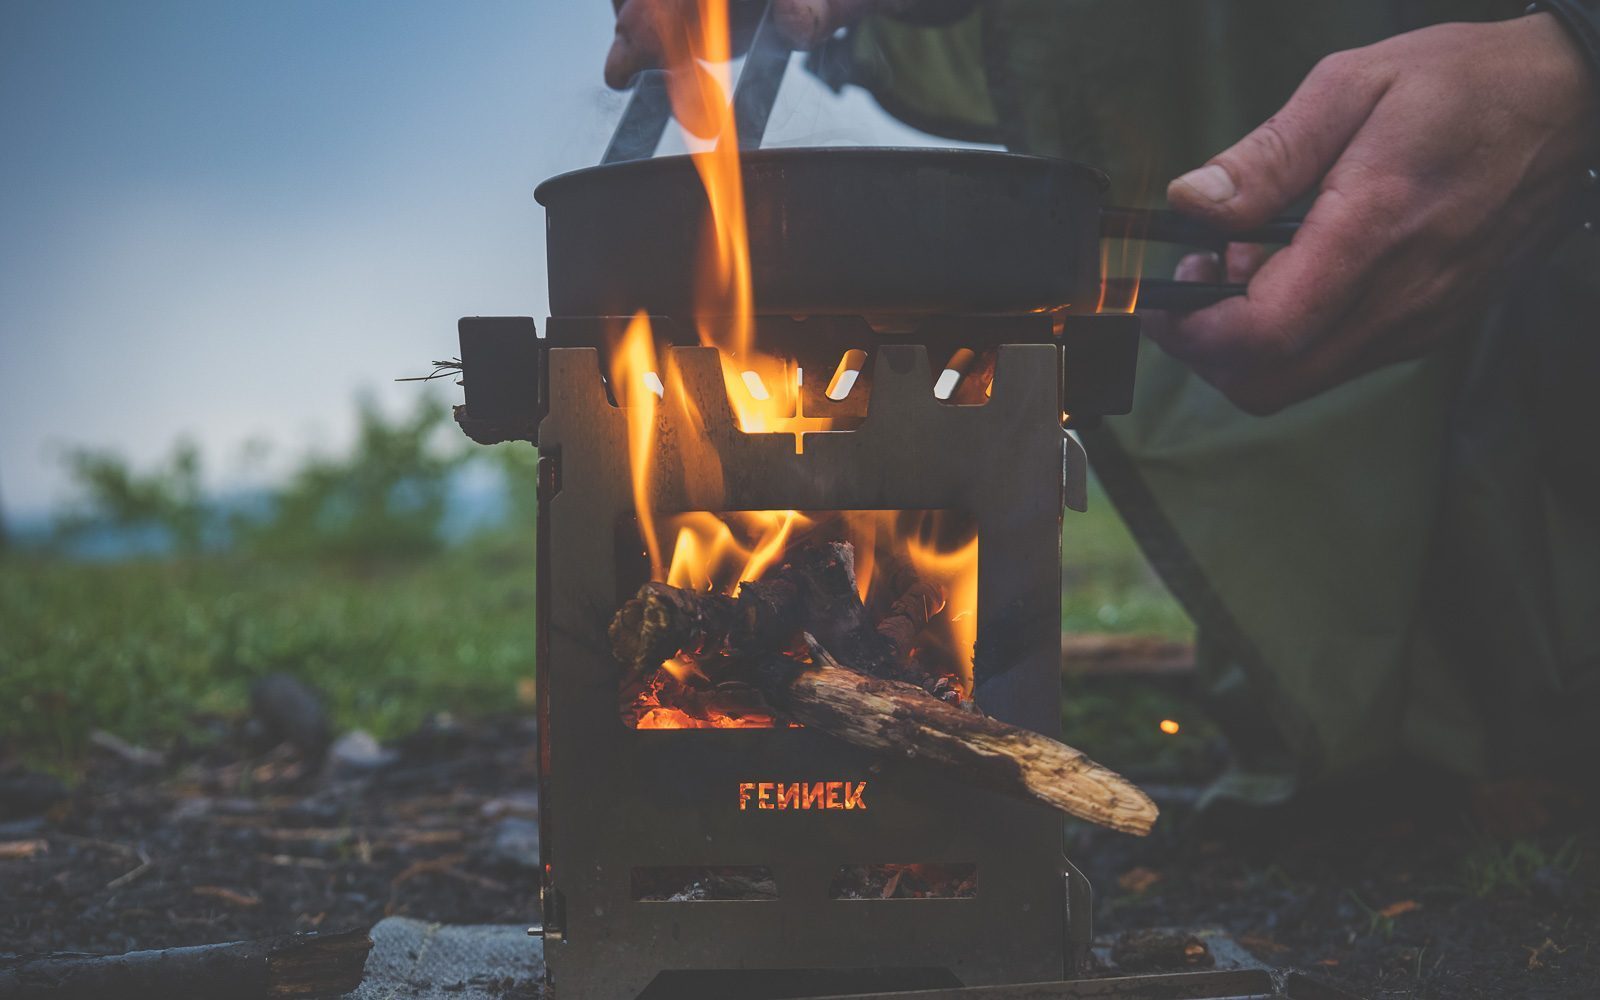 Hobokocher mit brennendem Holz im Einsatz, darauf eine Pfanne in der gerade Essen zubereitet wird in der Natur